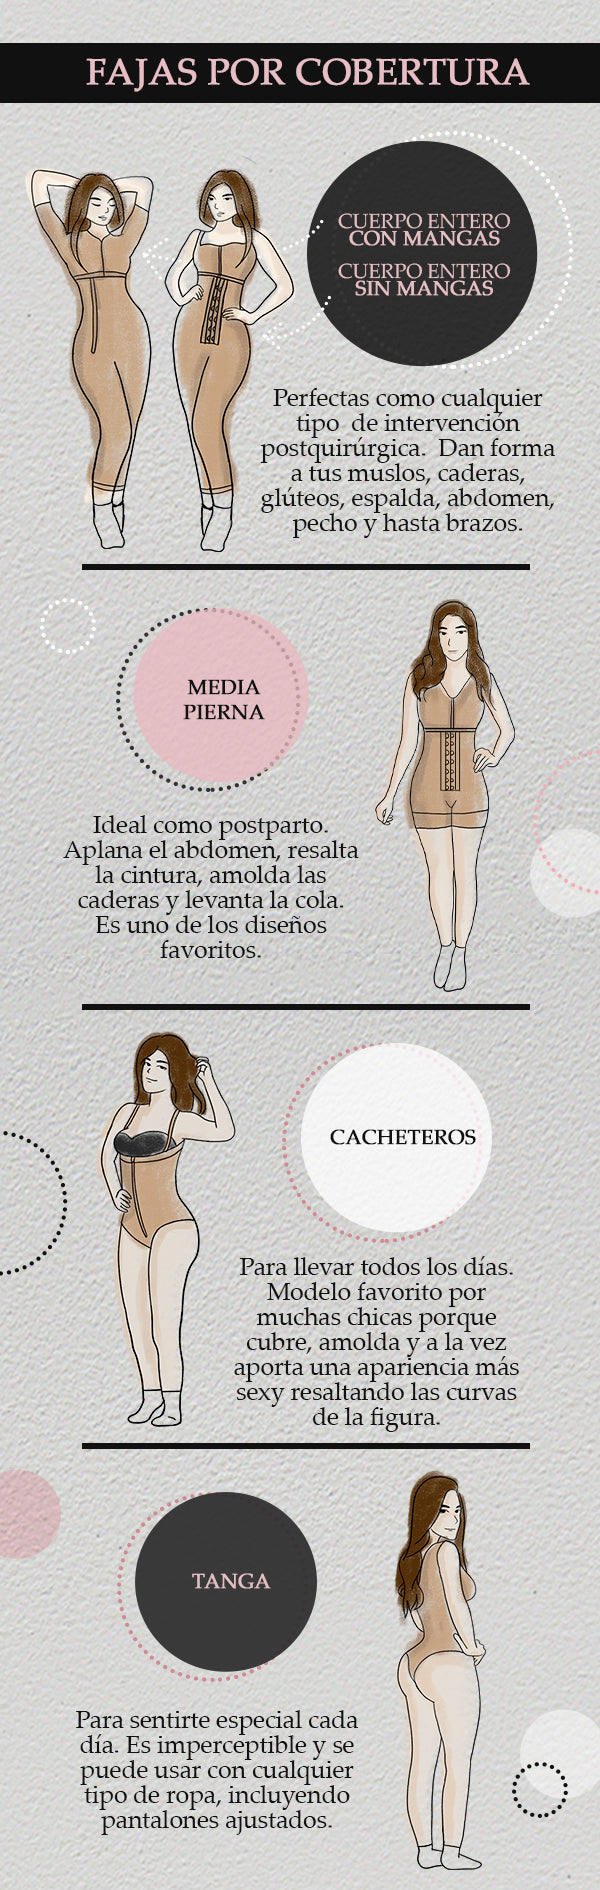 6 tipos de fajas colombianas para mujeres independientes – Shapes Secrets  Fajas